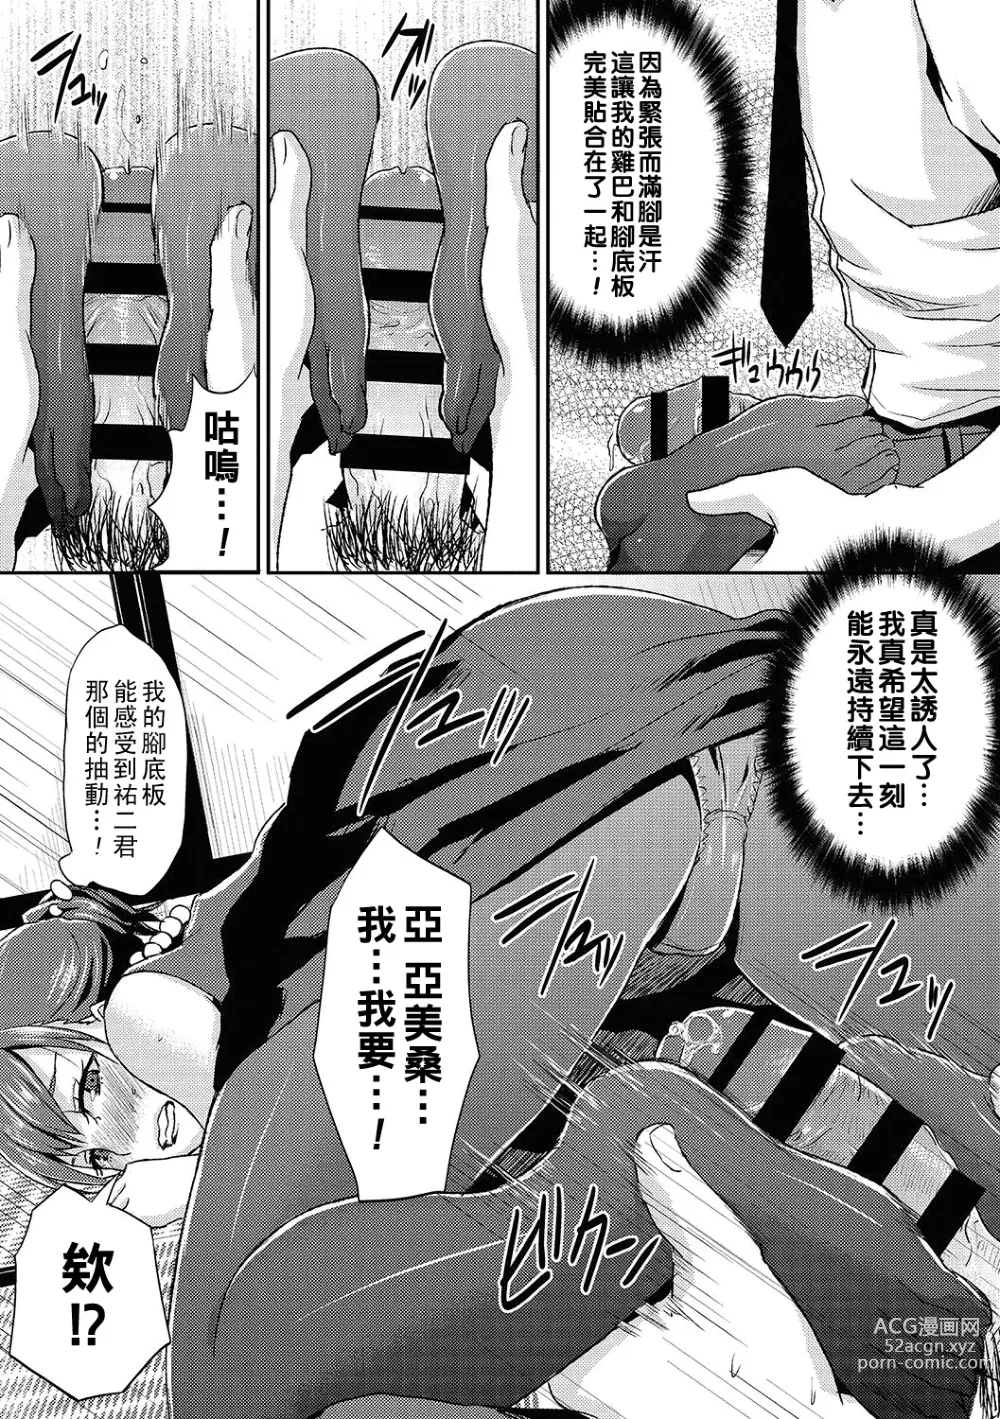 Page 9 of manga Miboujin no Stocking